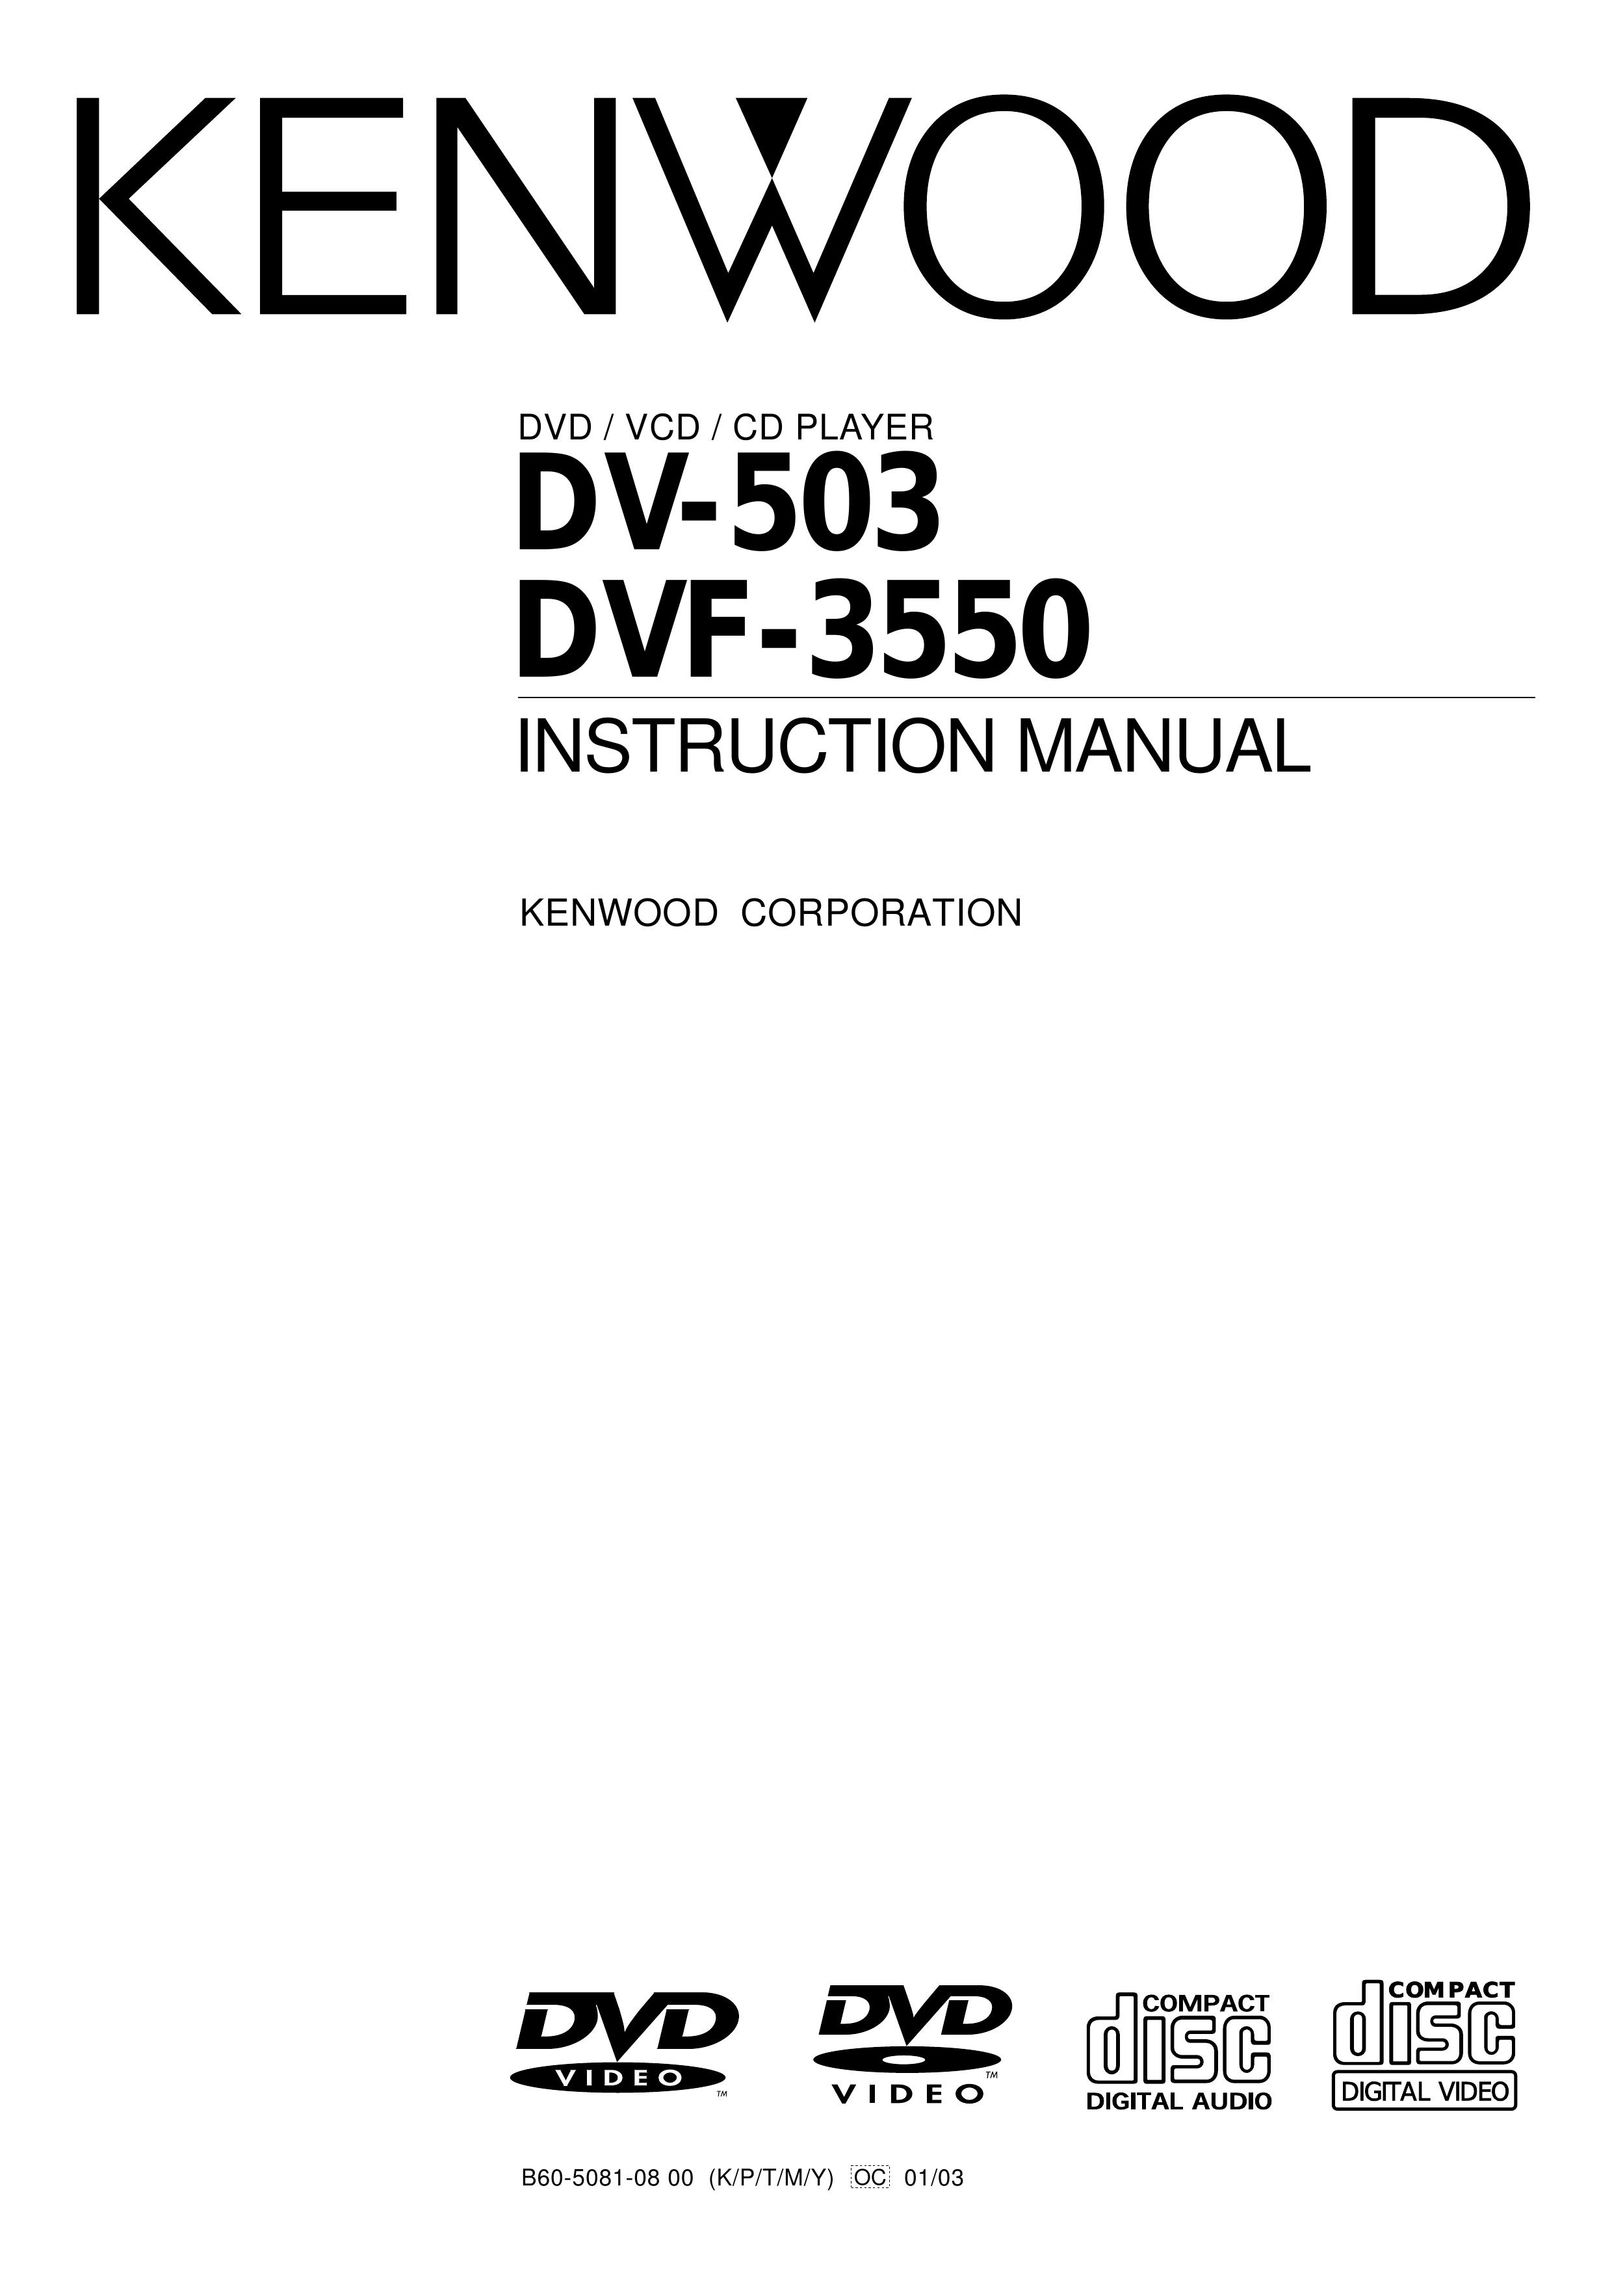 Kenwood DV-503 DVD Player User Manual